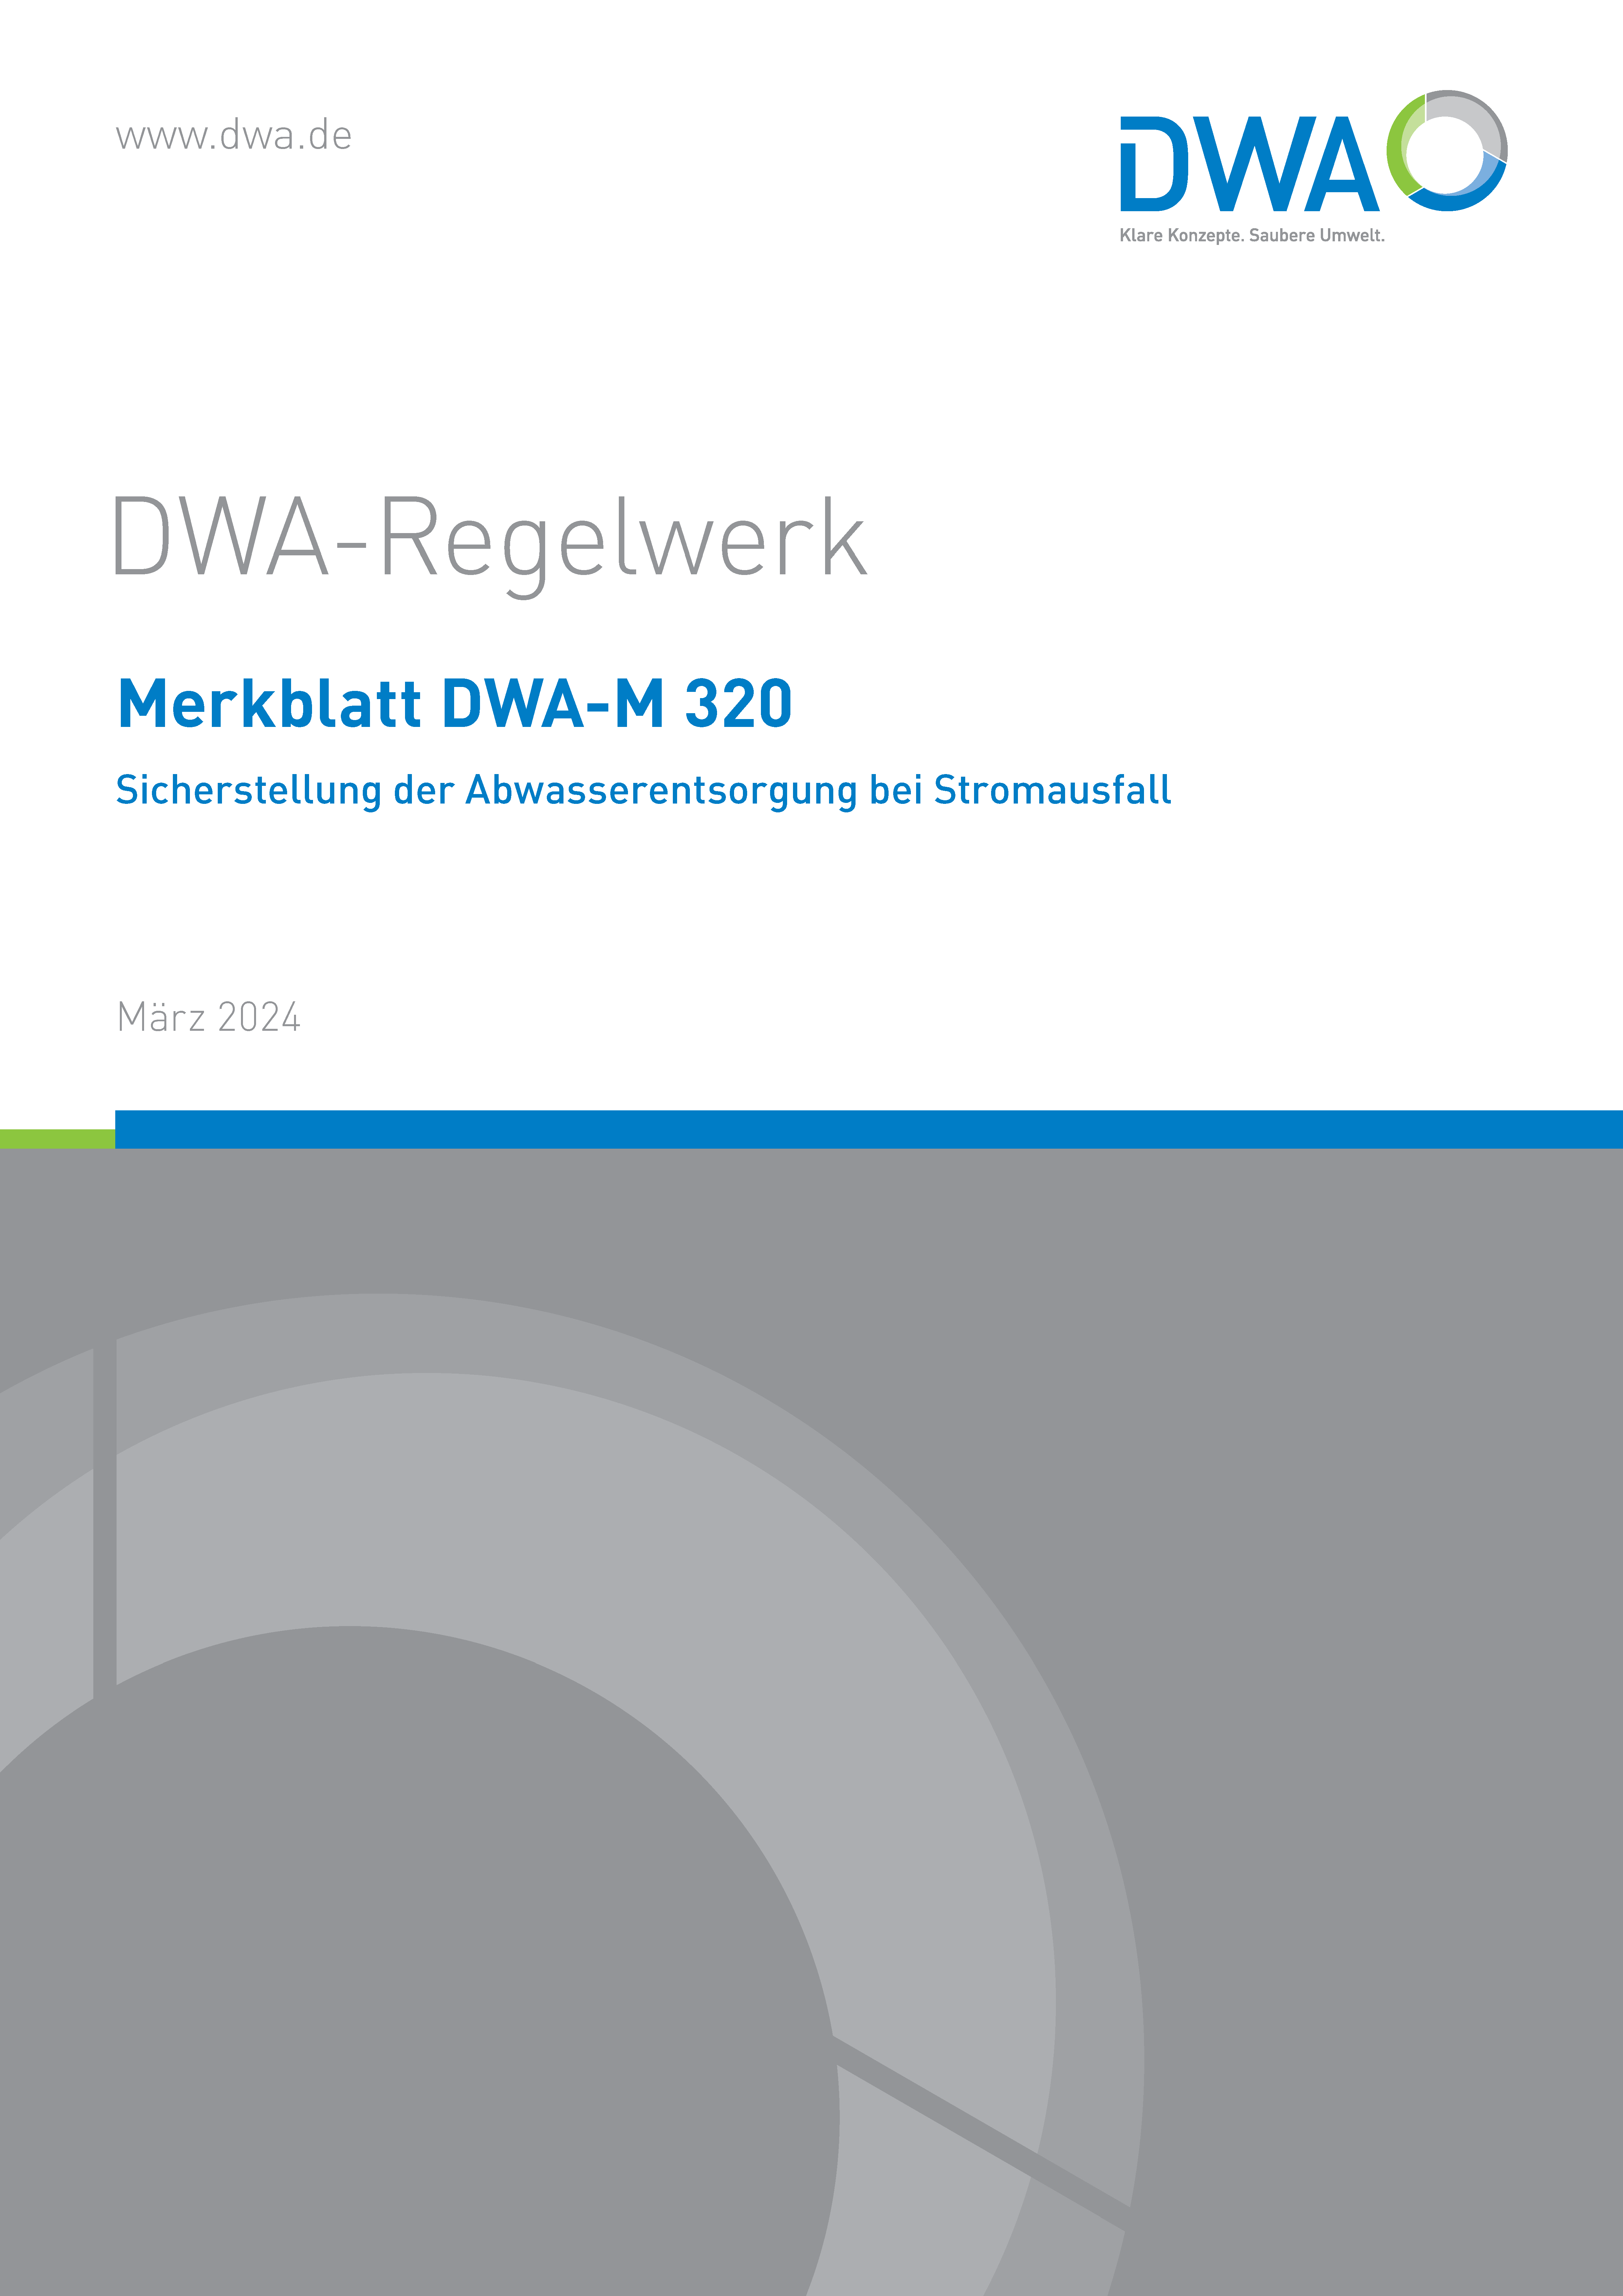 DWA-M 320 - Sicherstellung der Abwasserentsorgung bei Stromausfall - März 2024